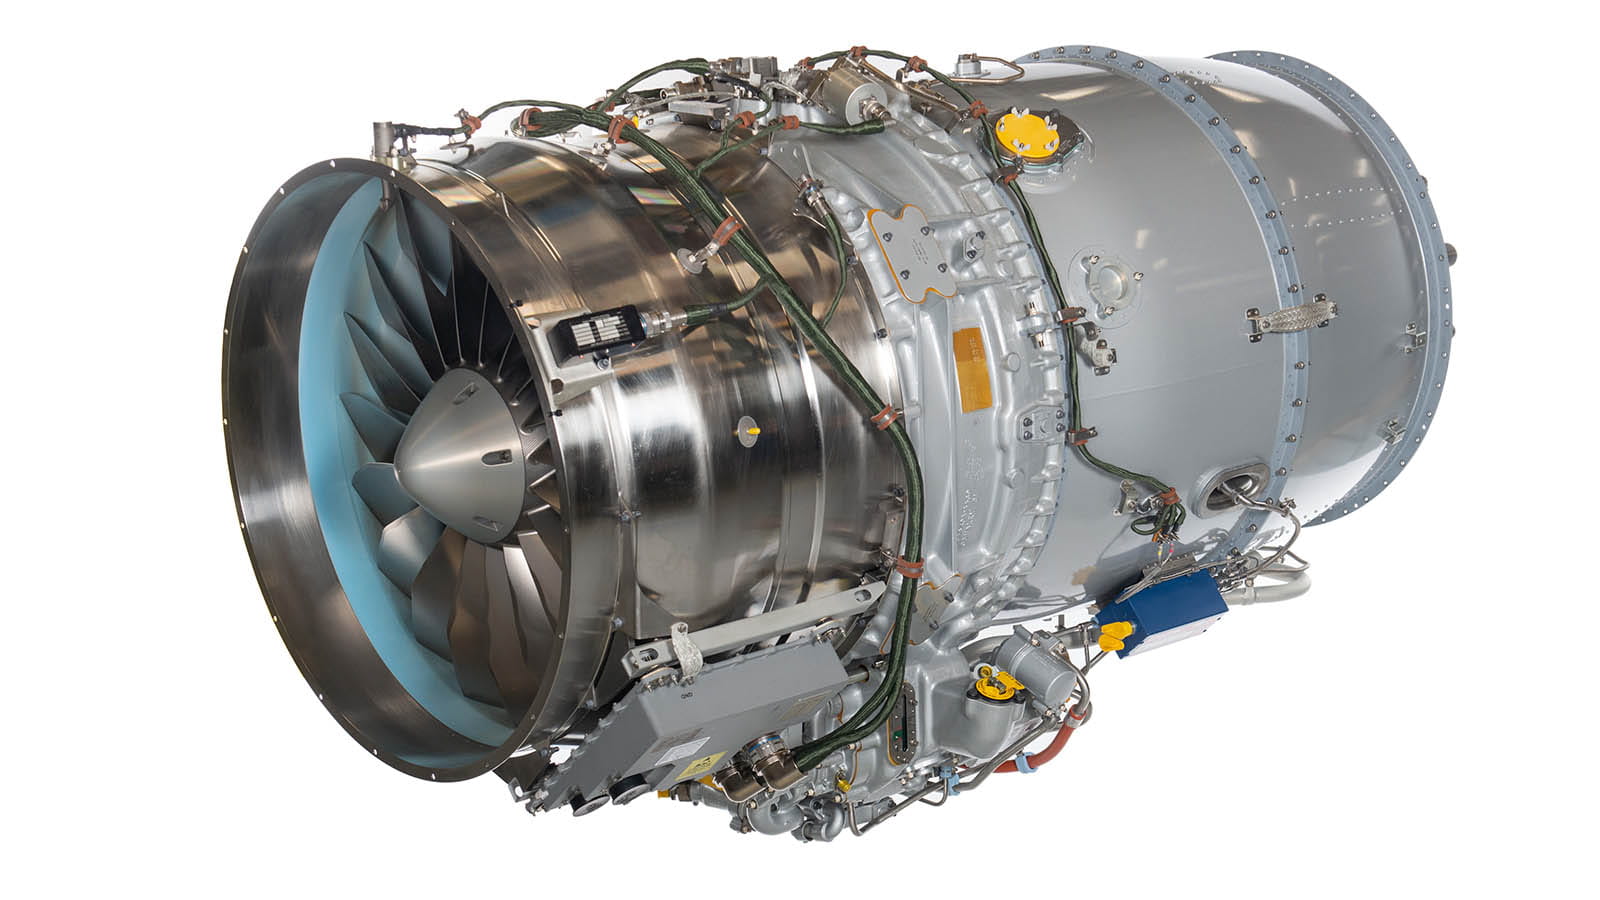 PW545D turbofan engine